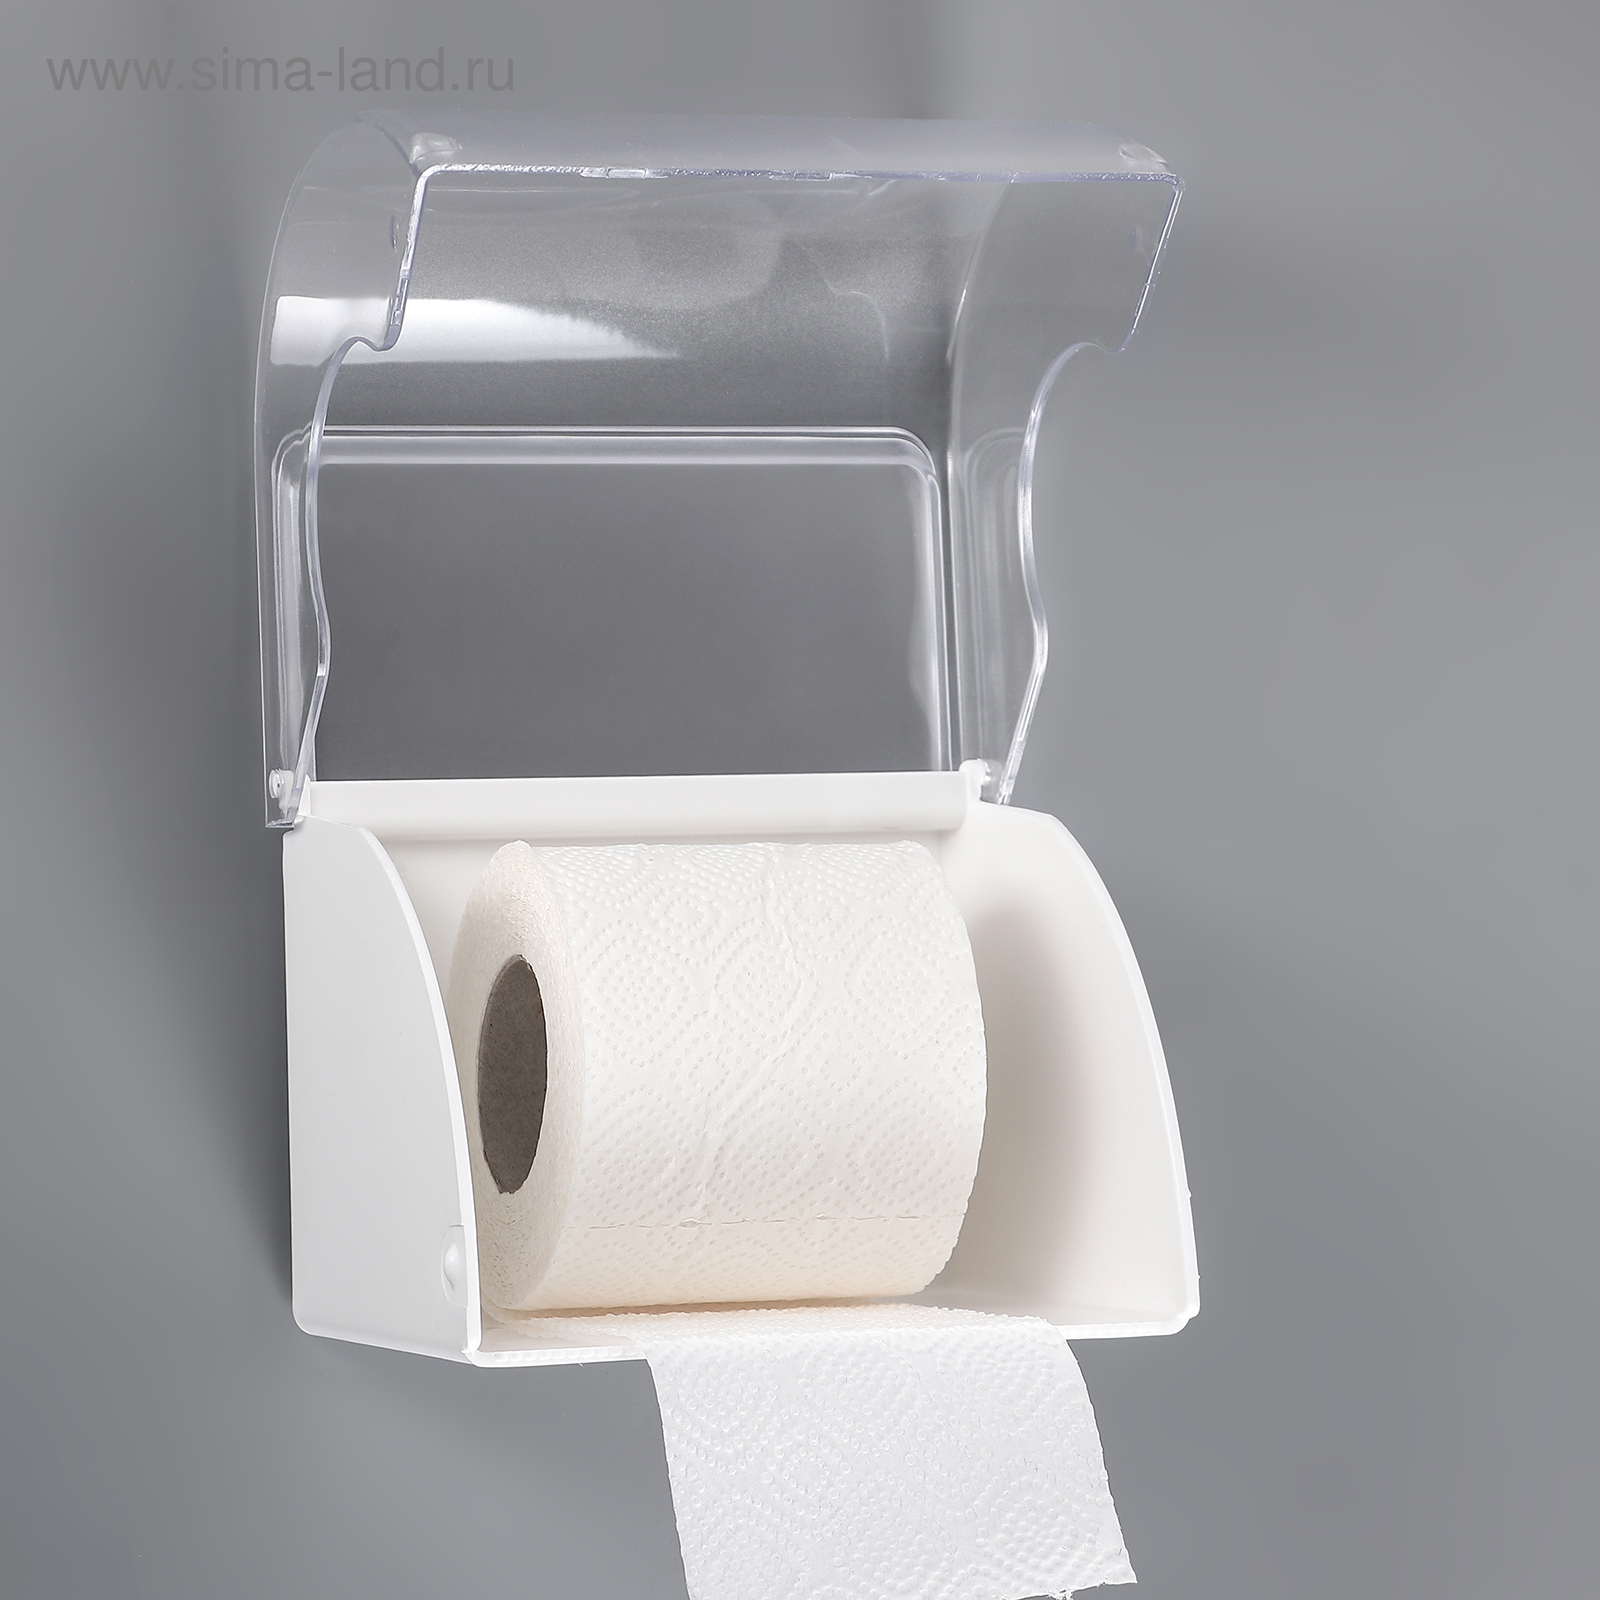 полка для туалетной бумаги настенная